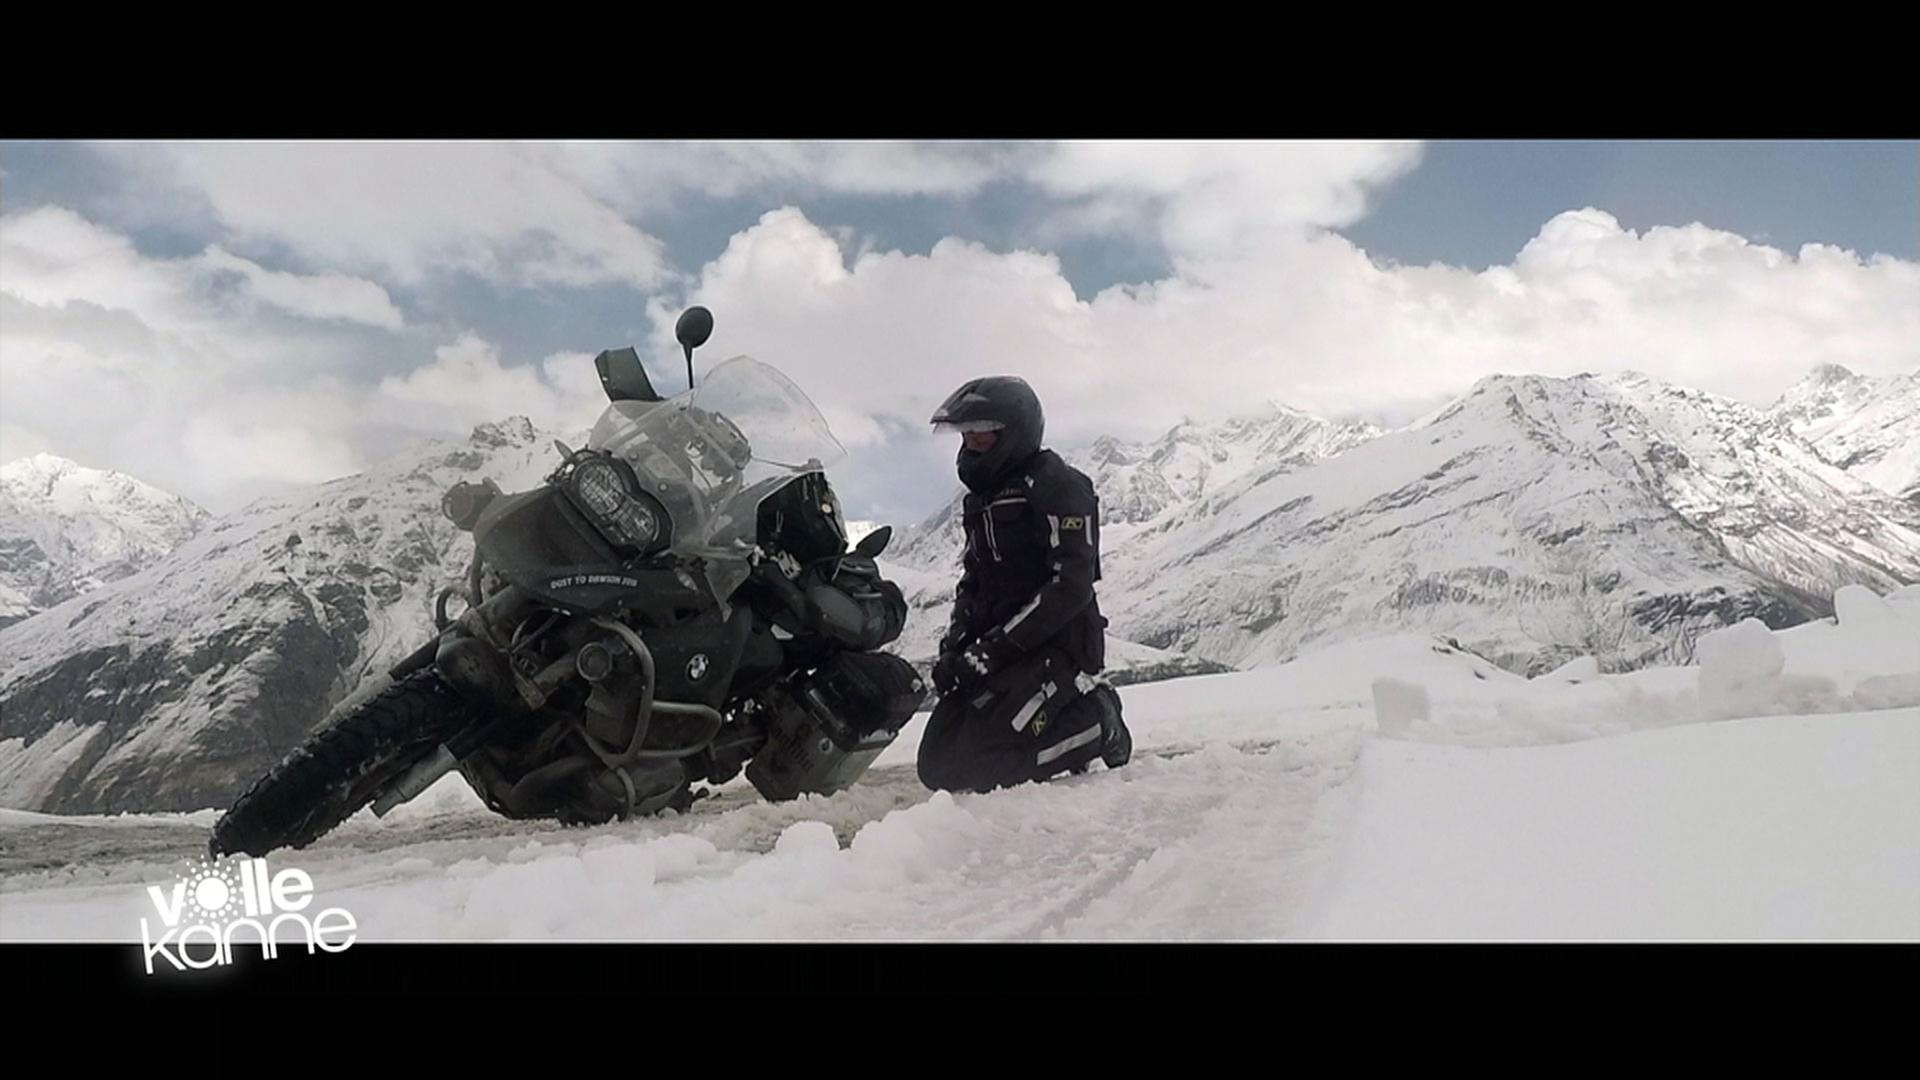 Motorrad und Motorradfahrer im Schnee